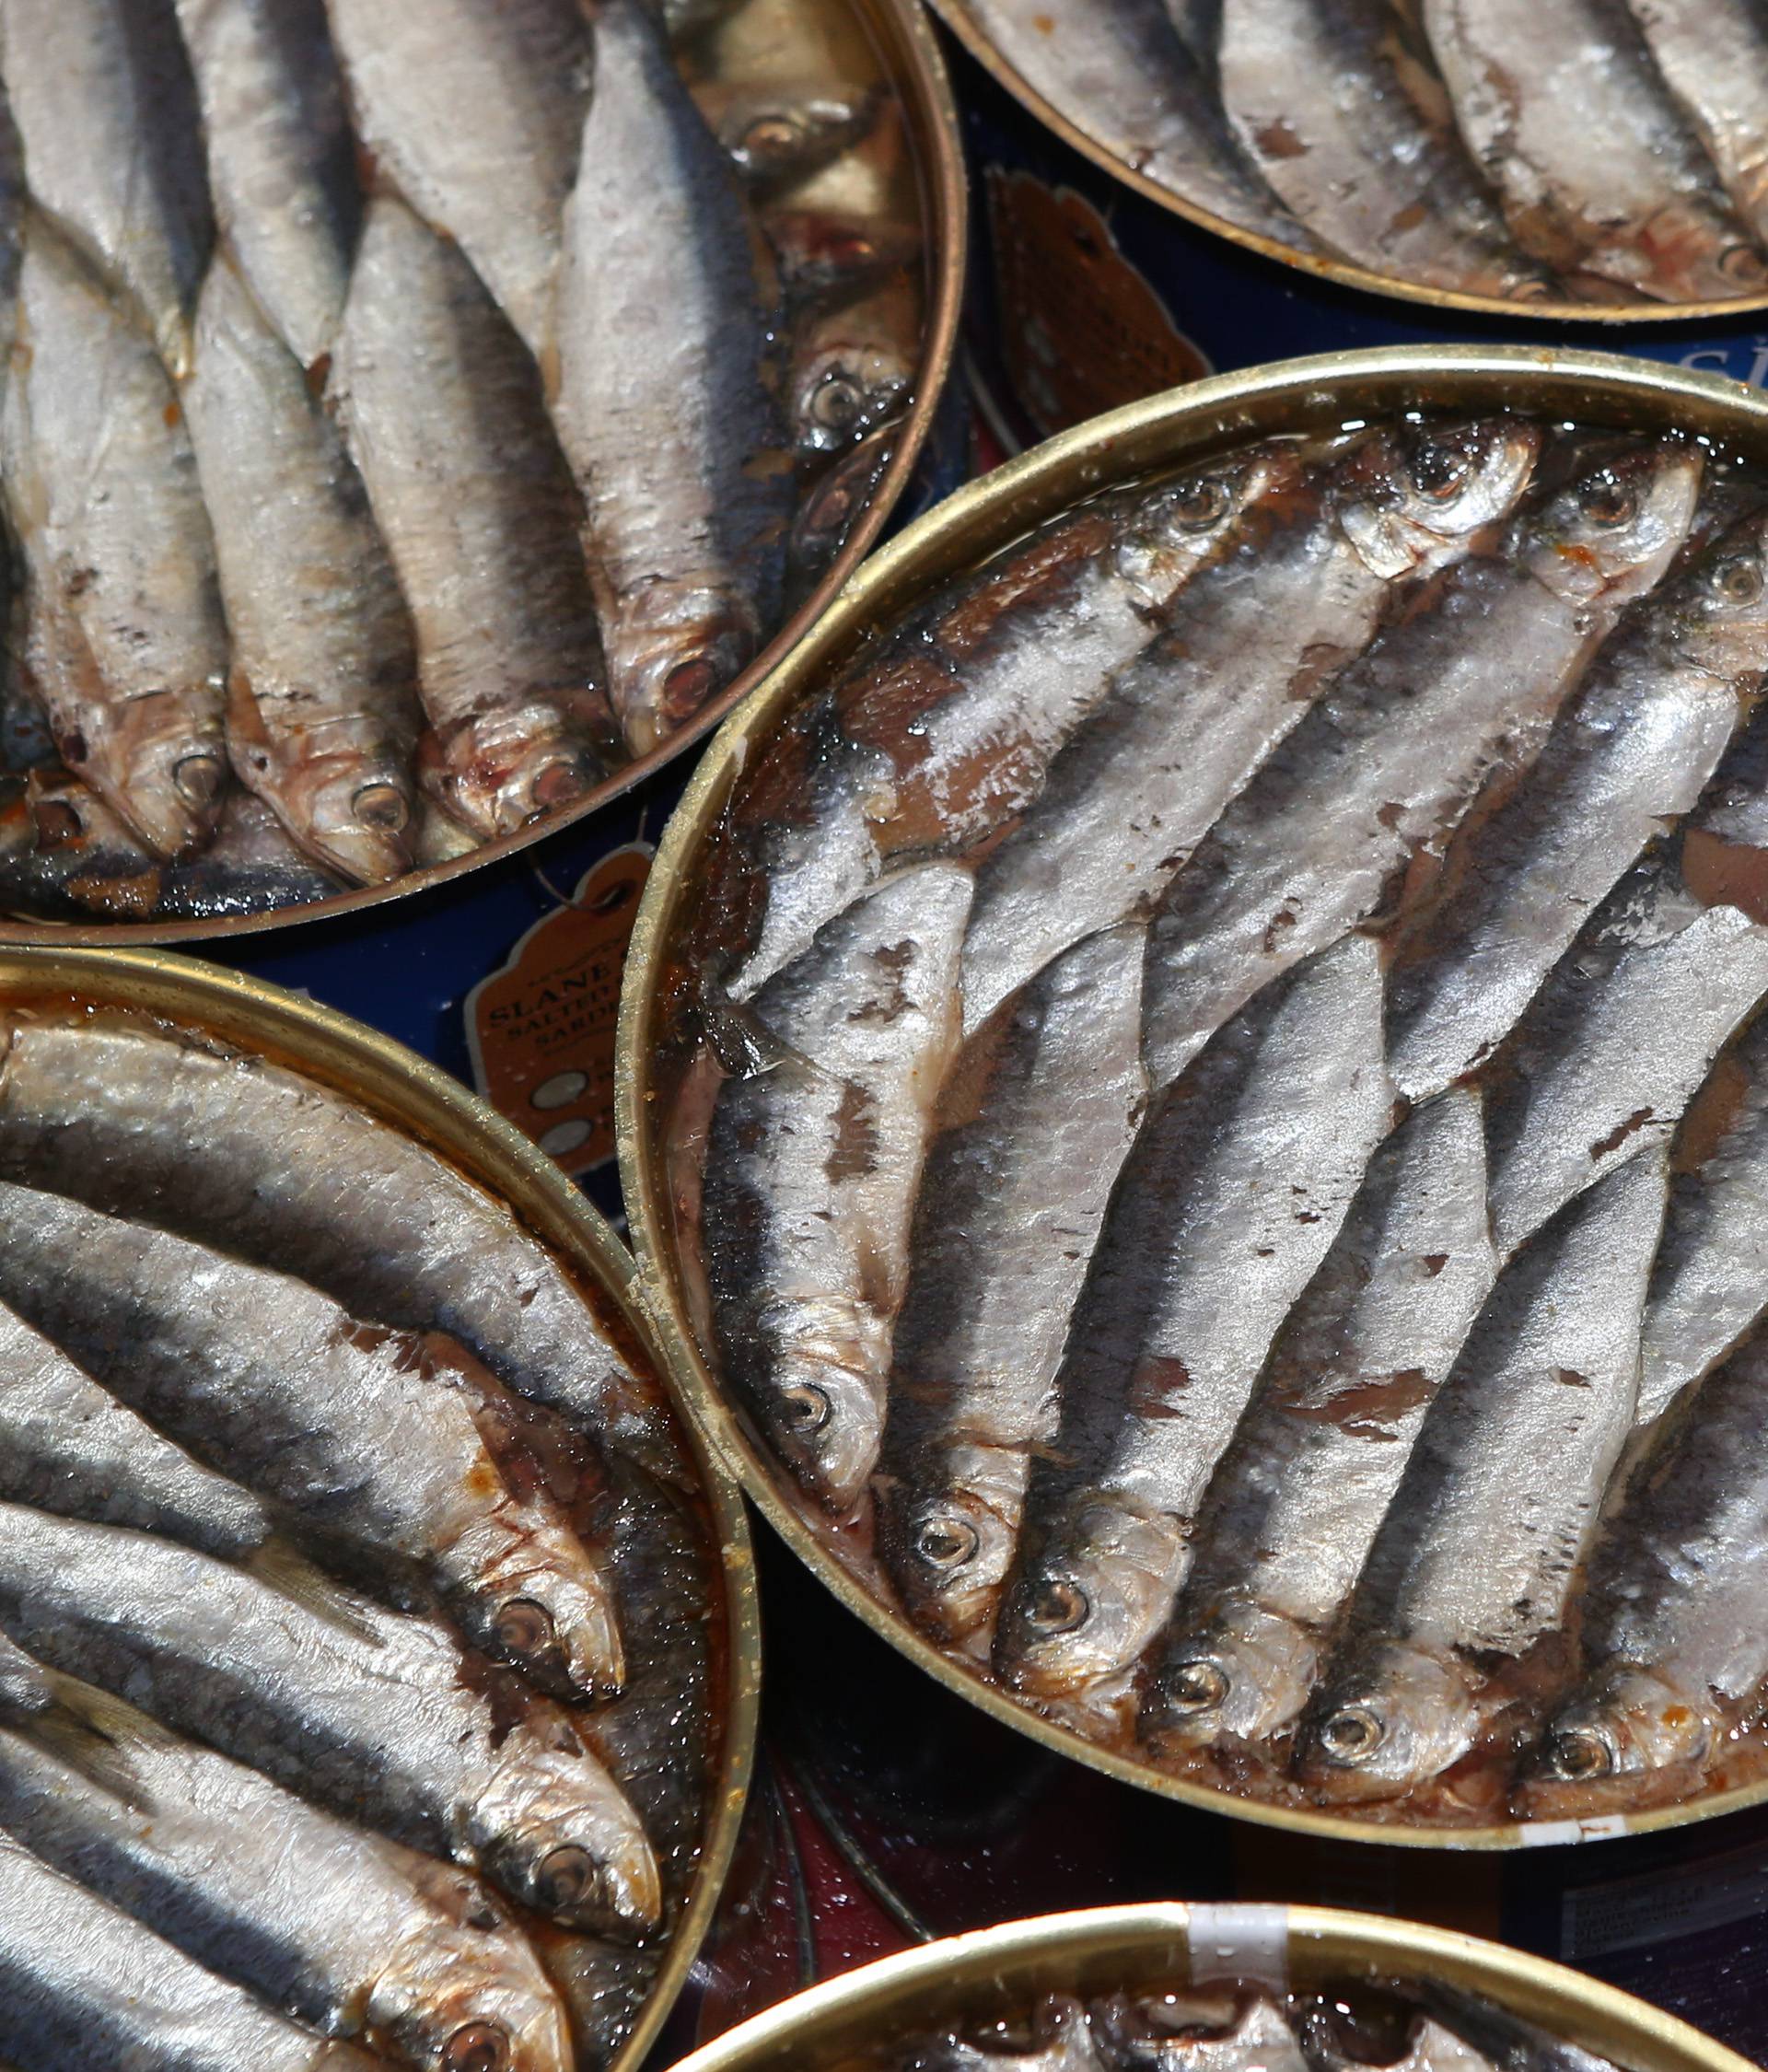 Talijan prerađuje ribu u Muću: "Od jezika teža je birokracija"